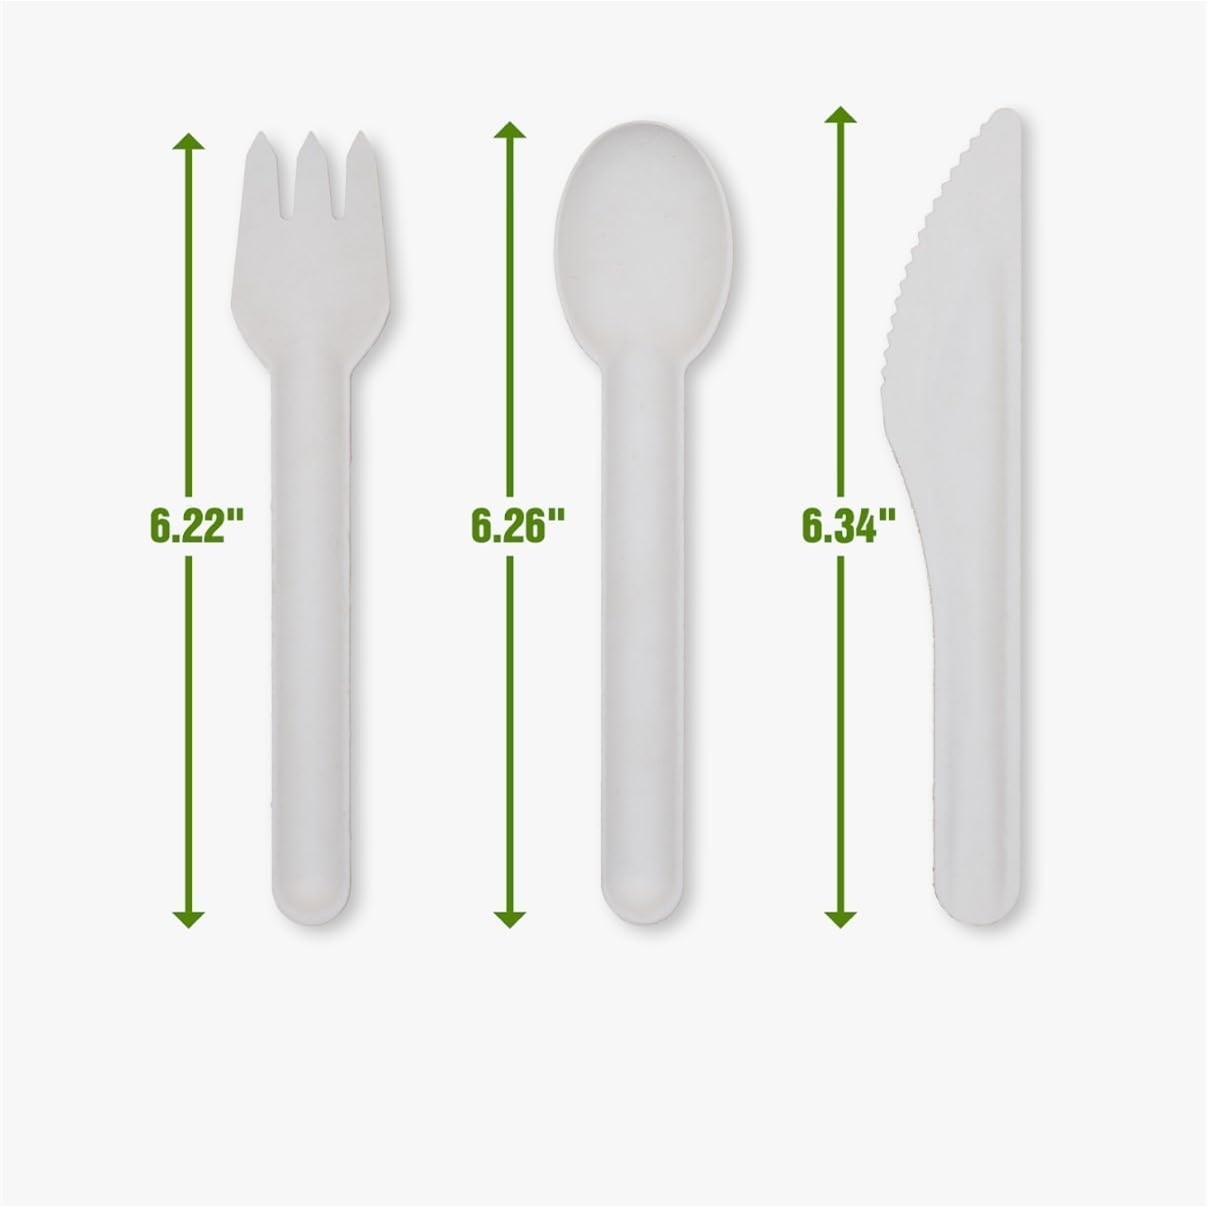 可堆肥勺子刀叉餐具套装 BPI 认证一次性纸器皿 50 件装重型可生物降解环保由甘蔗渣制成